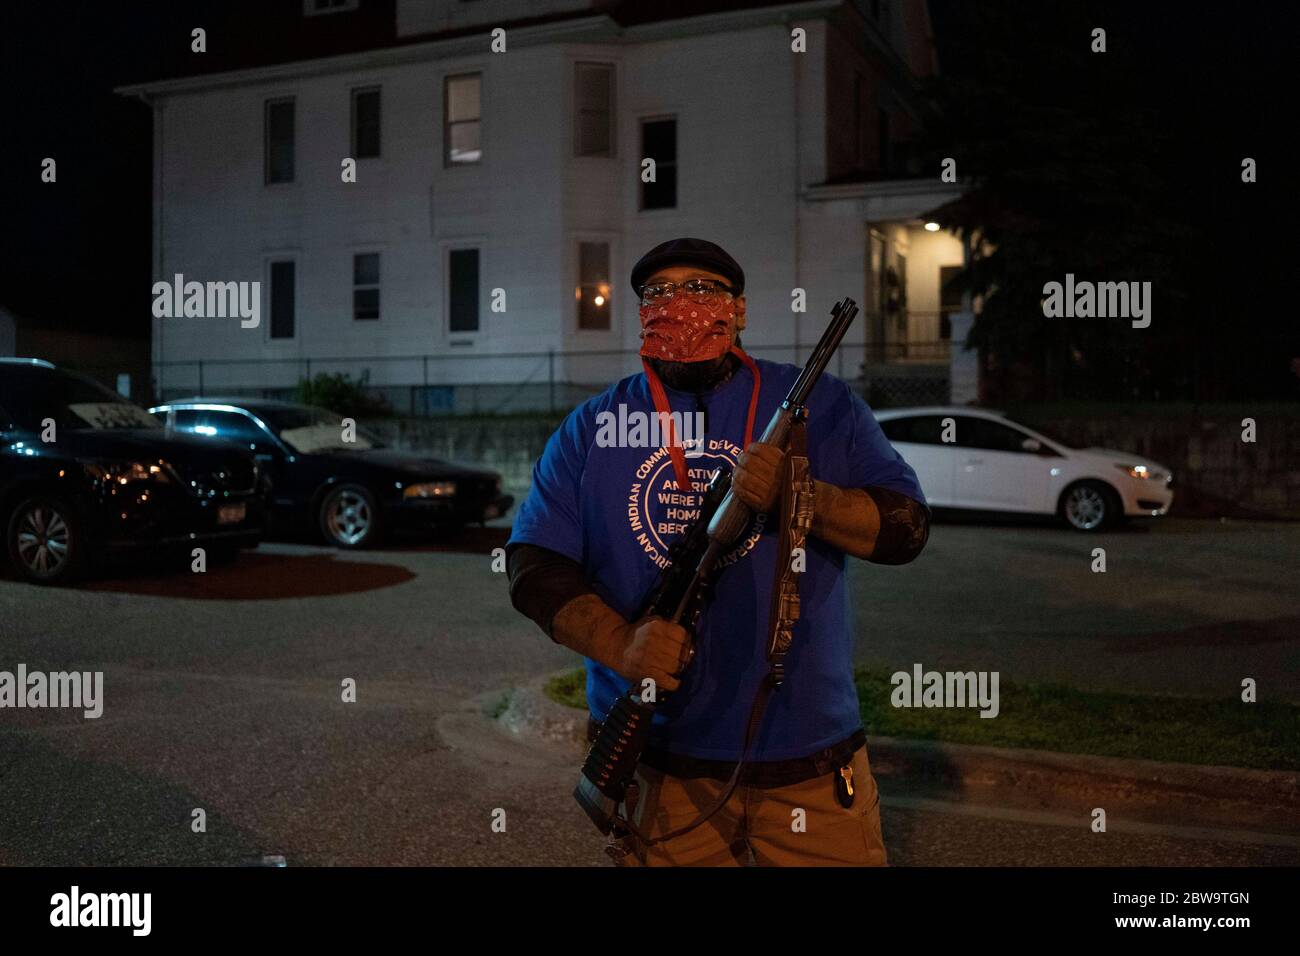 Minneapolis, Minnesota, EE.UU. 30 de mayo de 2020. Un nativo americano, sosteniendo un rifle, protege su vecindario durante las protestas de George Floyd el sábado por la noche en Minneapolis. Crédito: SAIT Serkan Gurbuz/ZUMA Wire/Alamy Live News Foto de stock